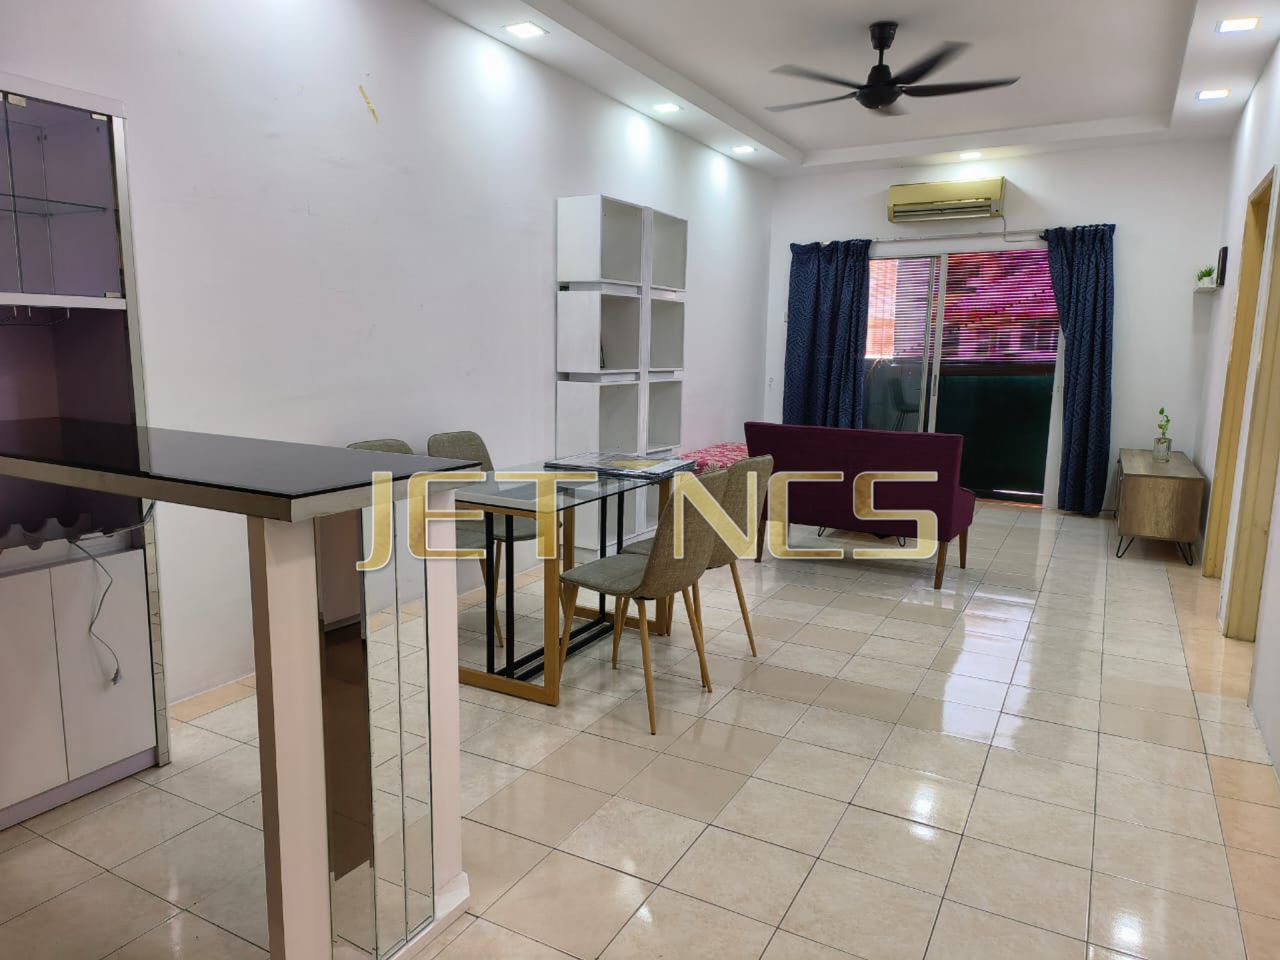 Apartment for sale at klang bayu villa freehold